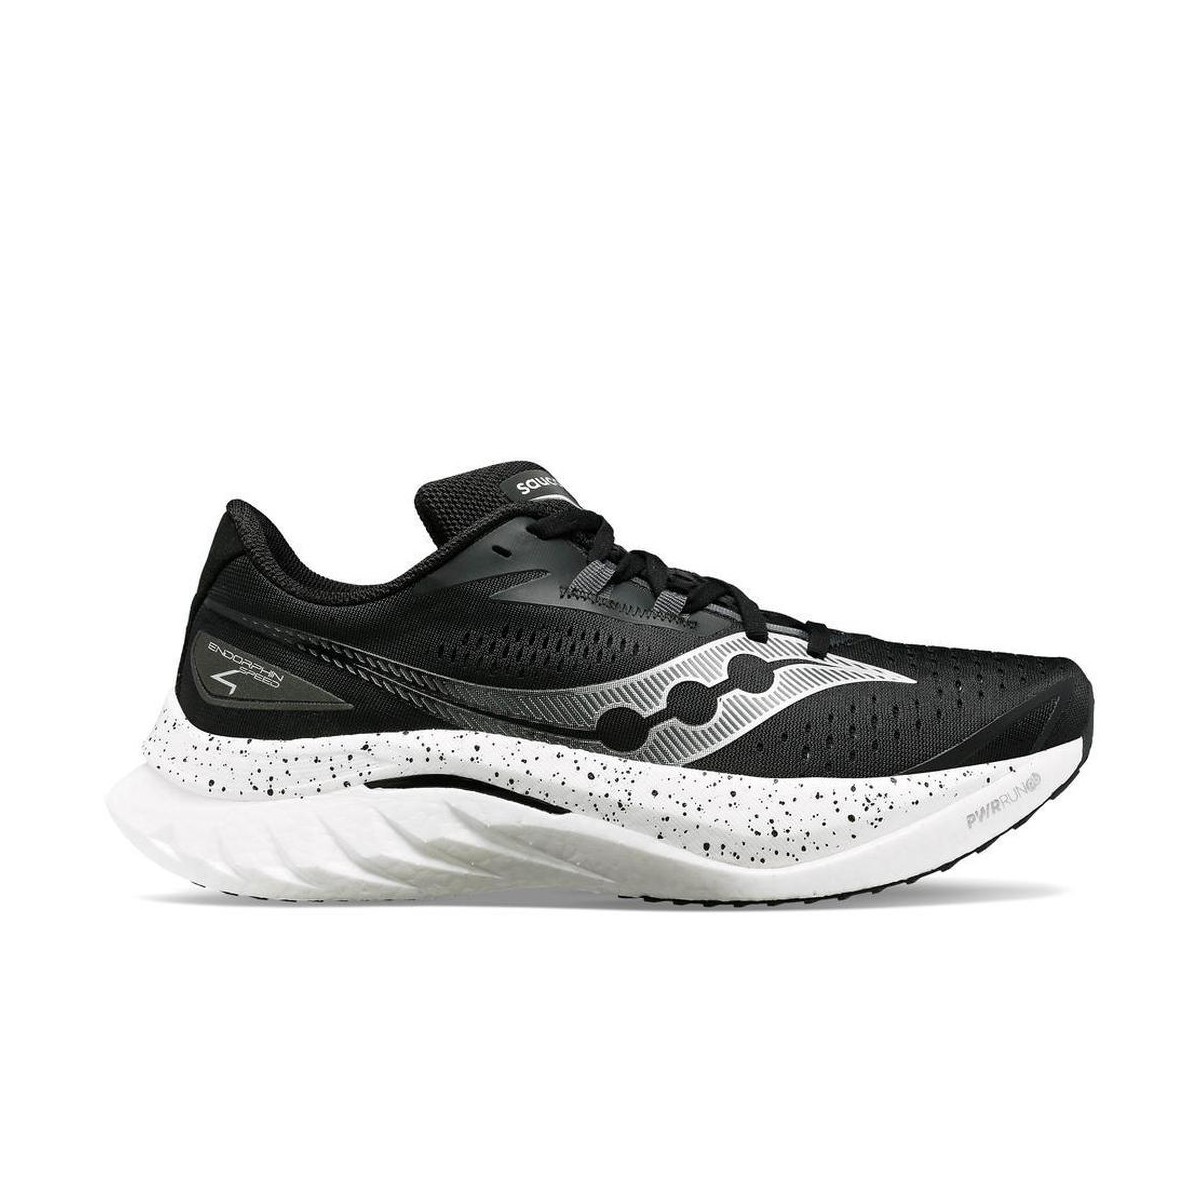 Schuhe Saucony Endorphin Speed 4 Schwarz Weiß SS24, Größe 41 - EUR